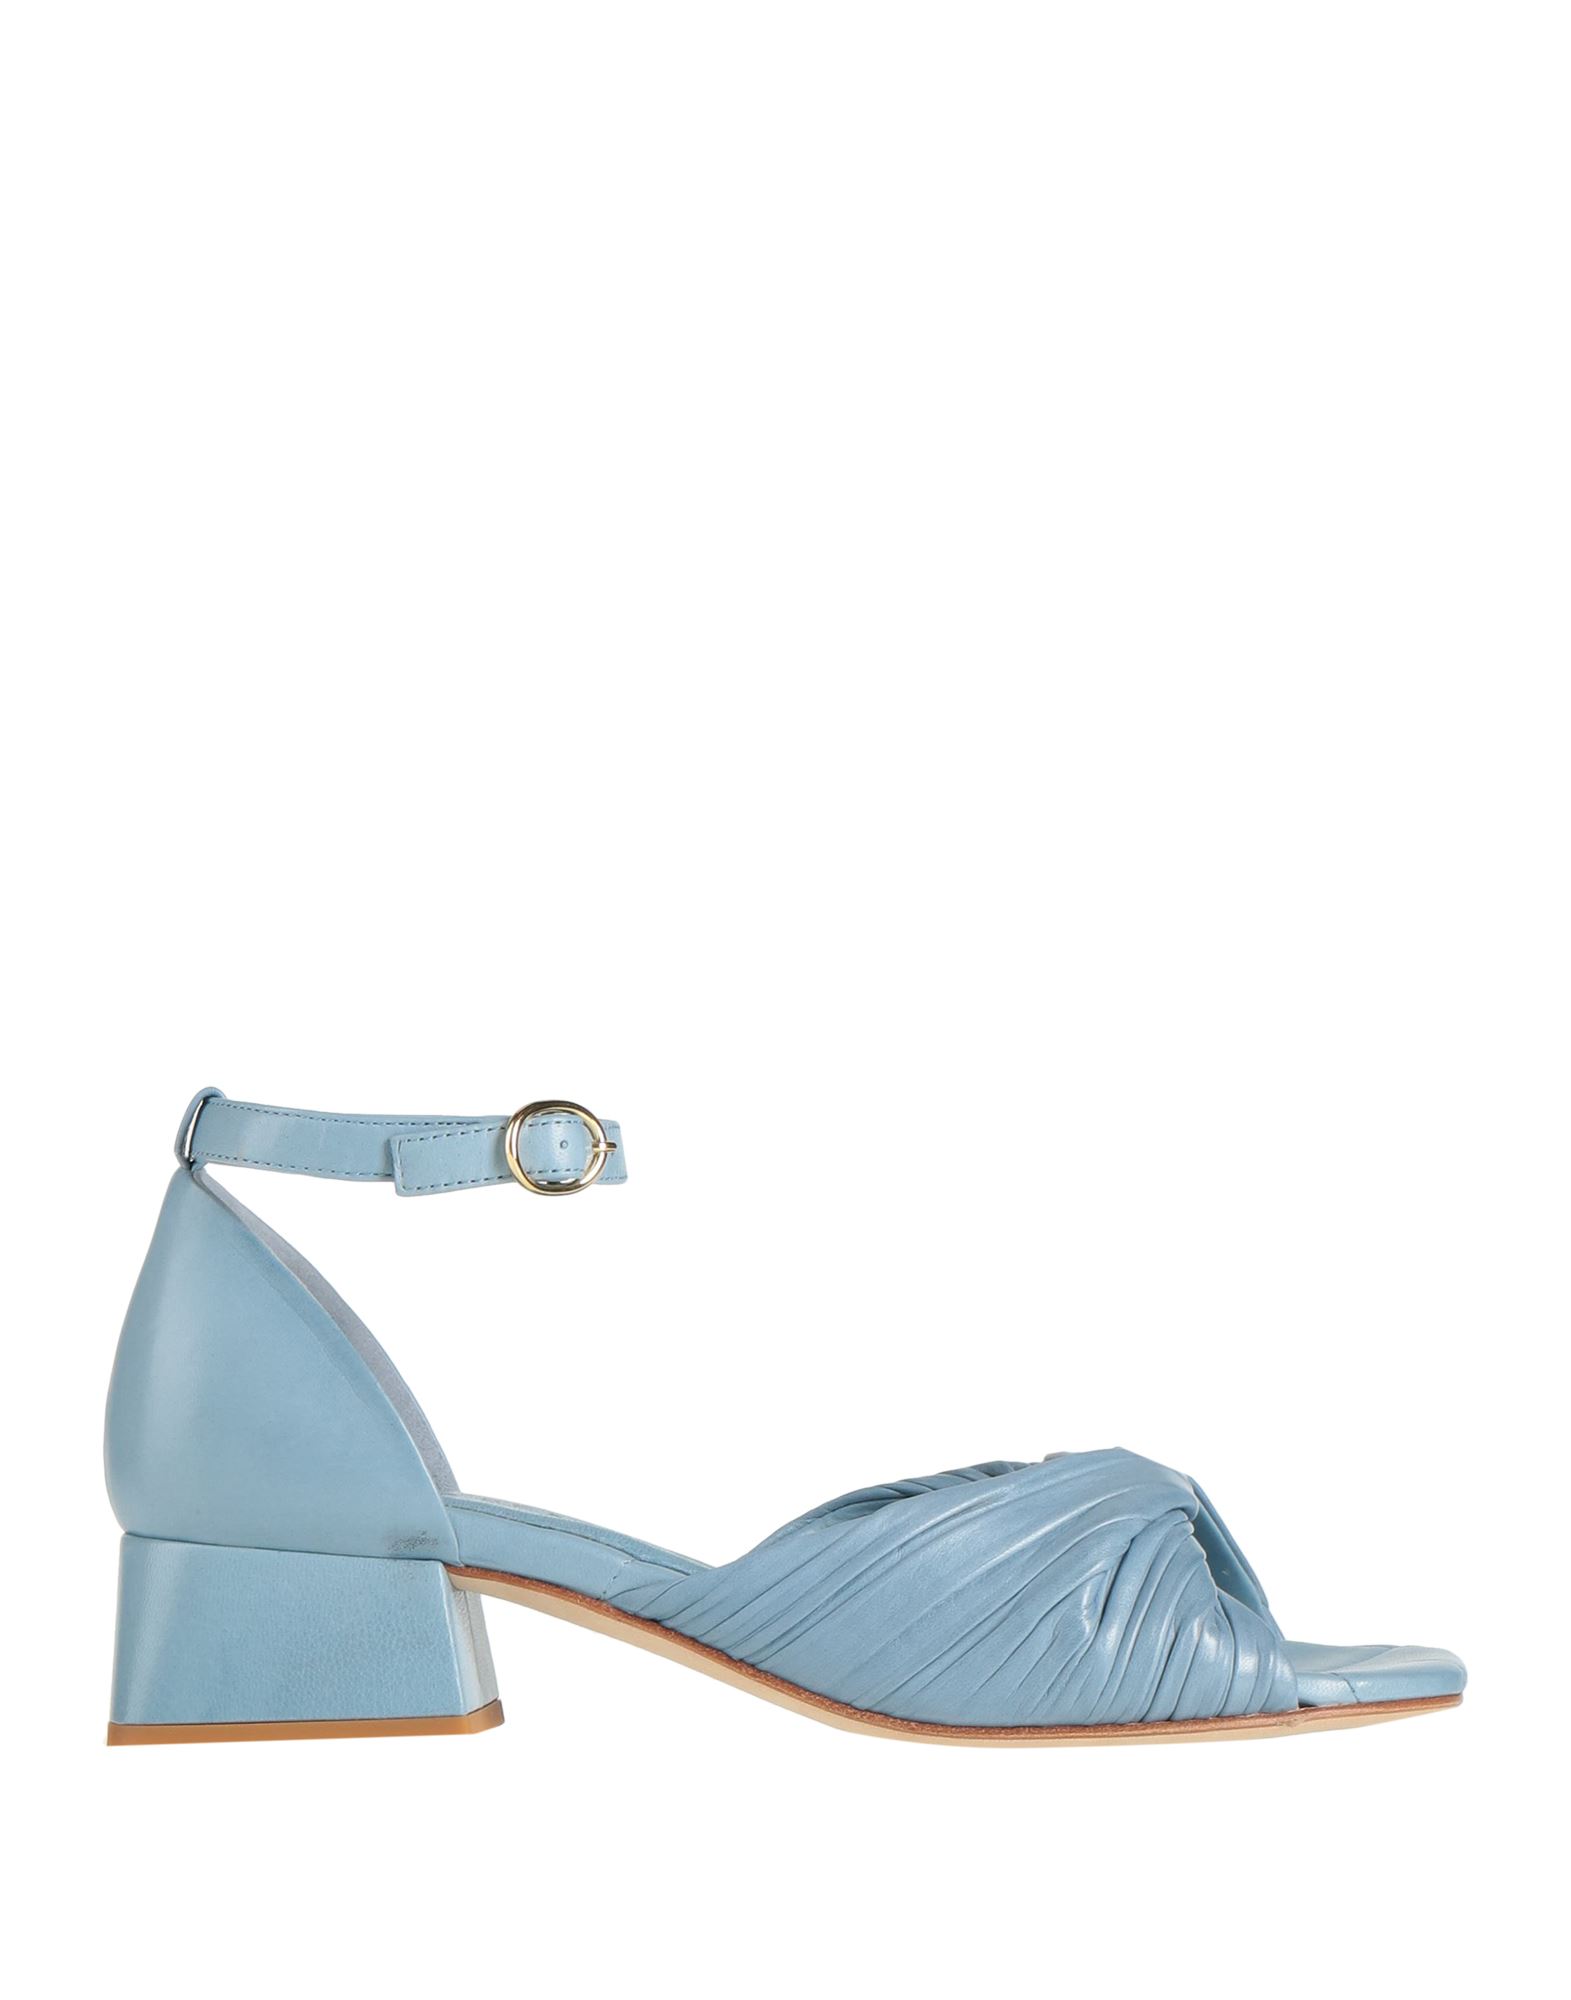 Shop Pas De Rouge Woman Sandals Sky Blue Size 7.5 Soft Leather